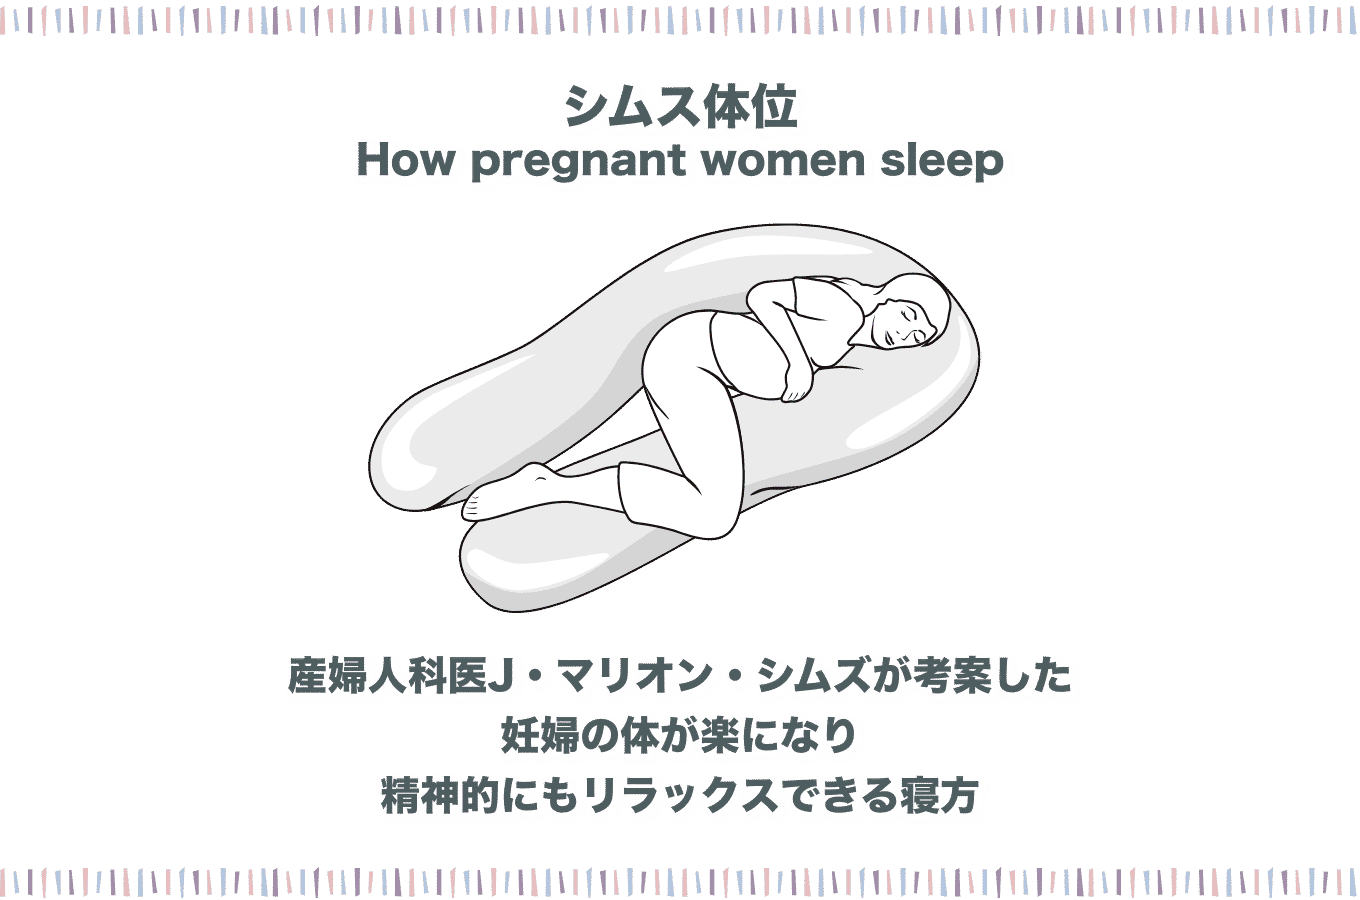 妊婦におすすめの寝方とは 楽な寝方や しない方が良い寝方を徹底解説 Fam S Baby